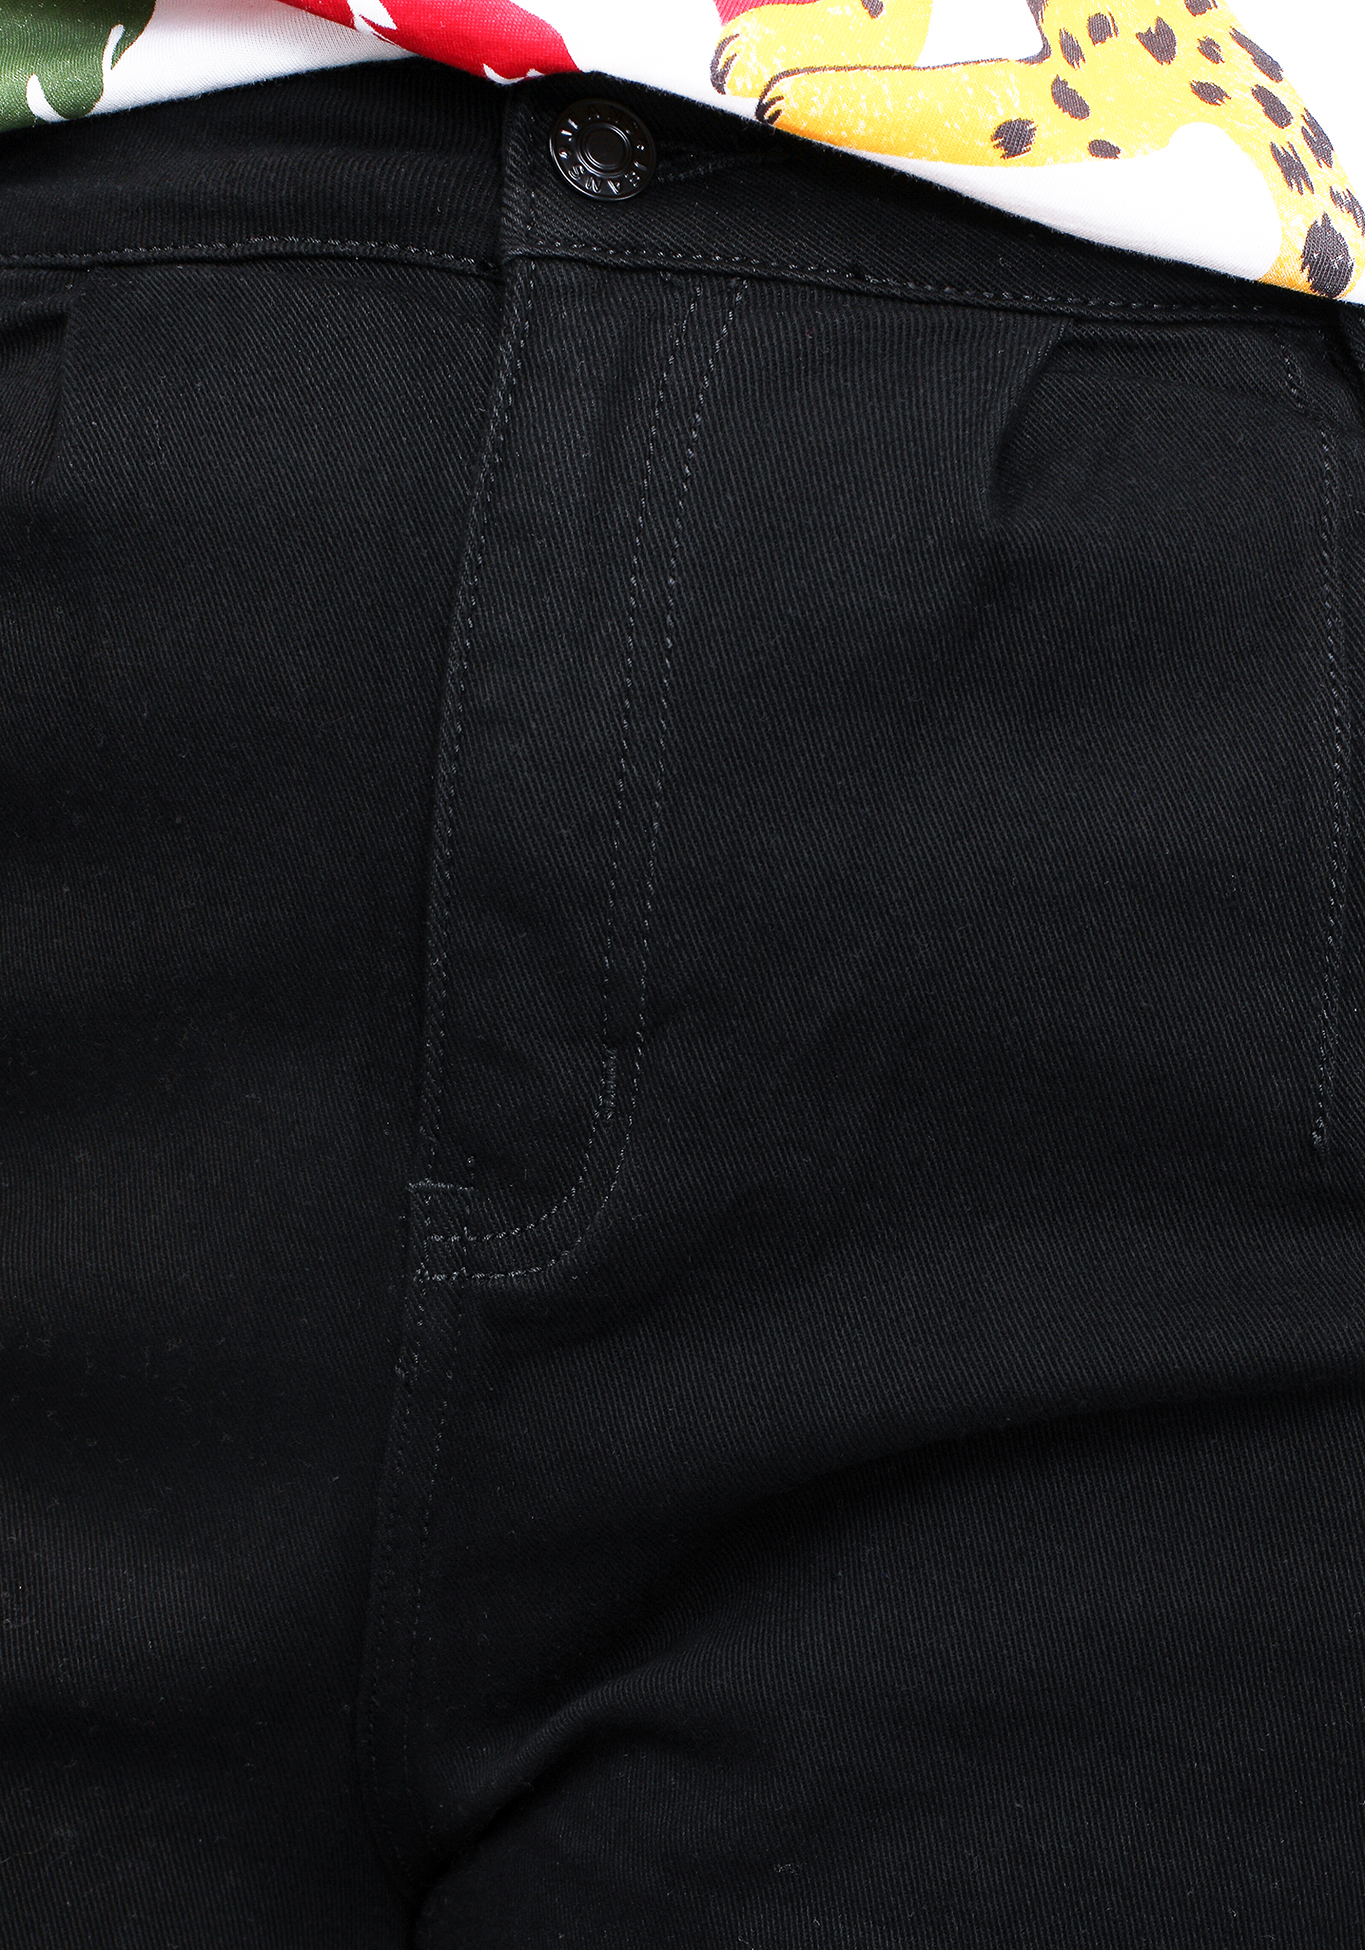 Джинсы "Изящные формы" LORICCI, размер 50, цвет черный - фото 9